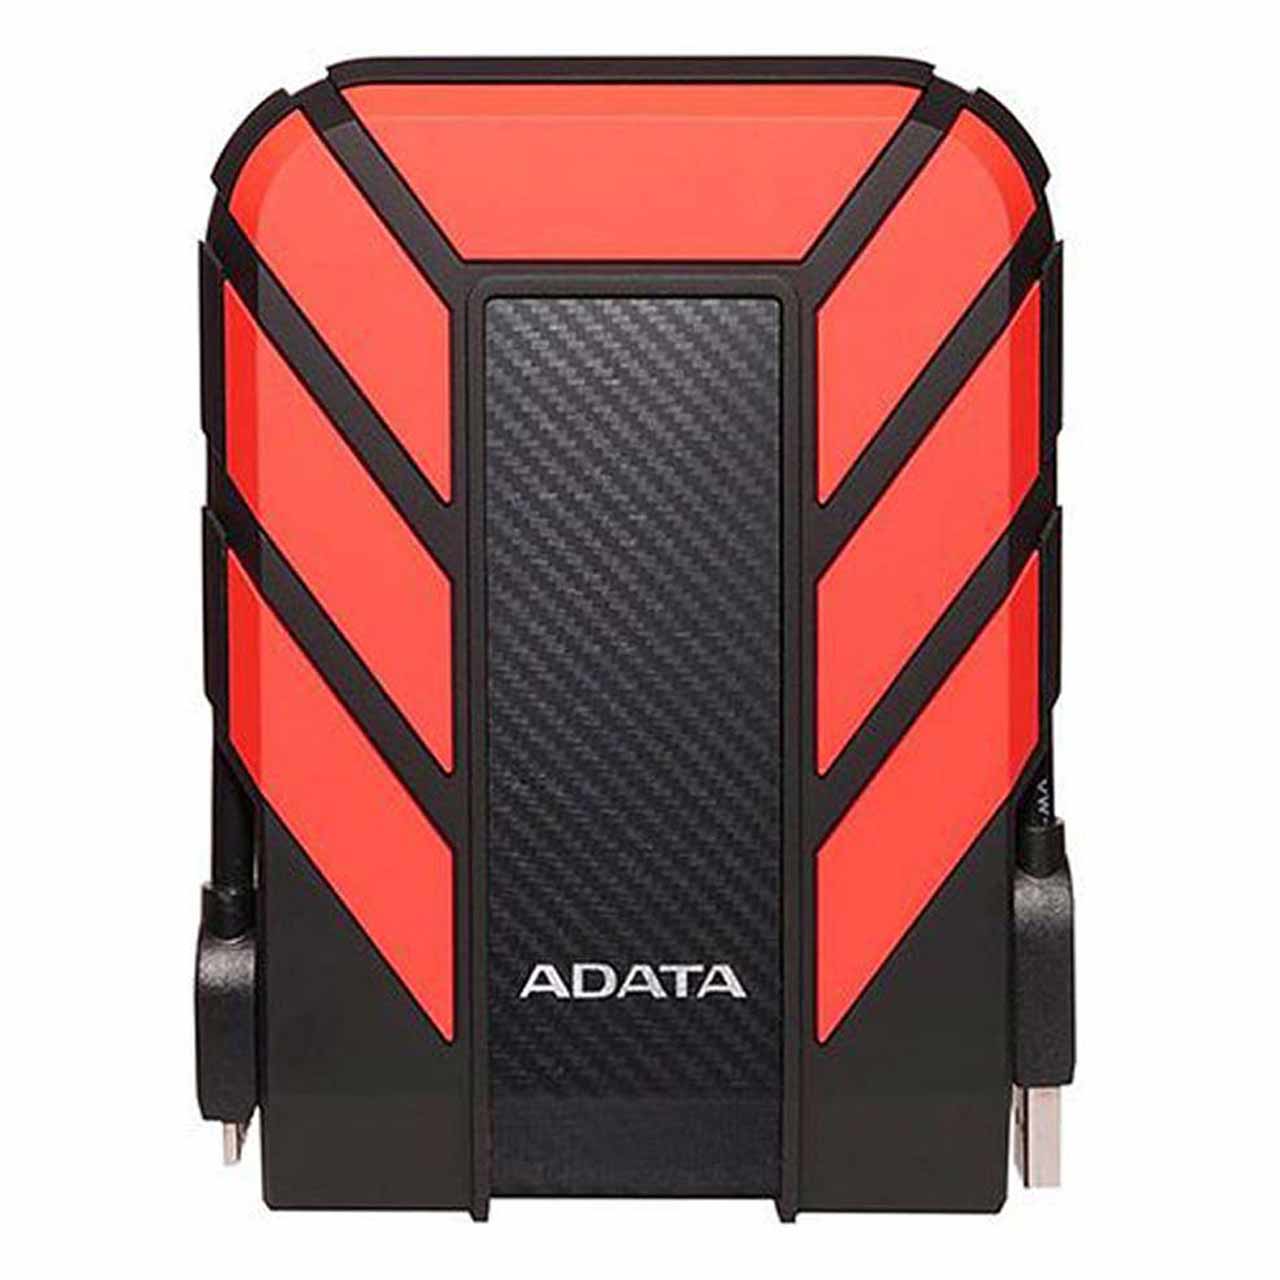 هارد اکسترنال ADATA مدل Durable HD710 Pro ظرفیت 1TB - قرمز (گارانتی شرکت آونگ